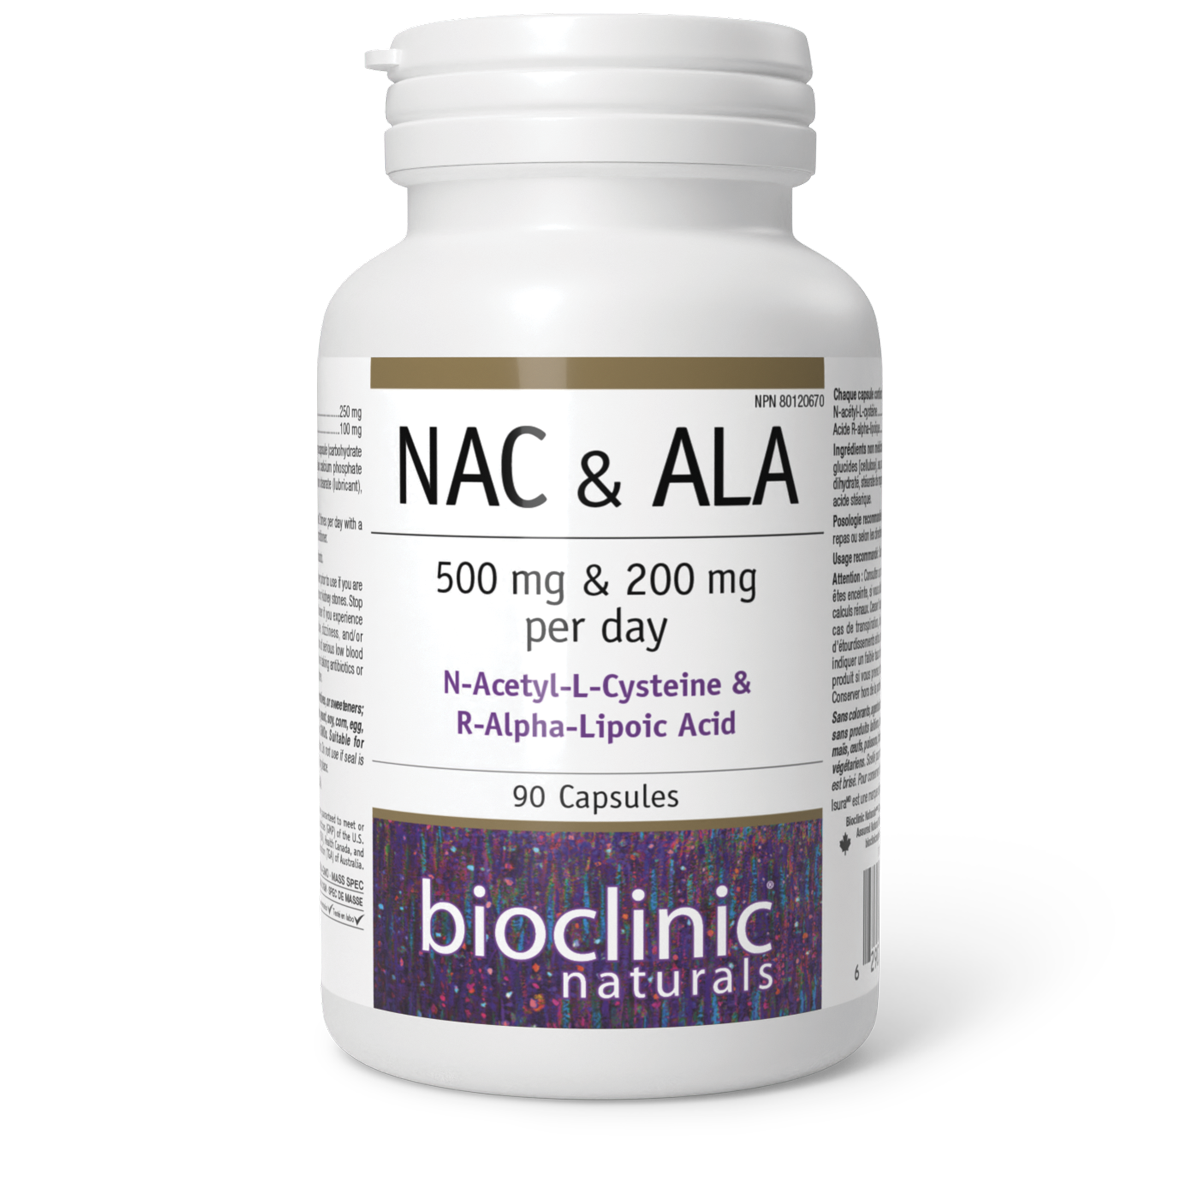 BioClinic Naturals NAC & ALA 90 Capsules